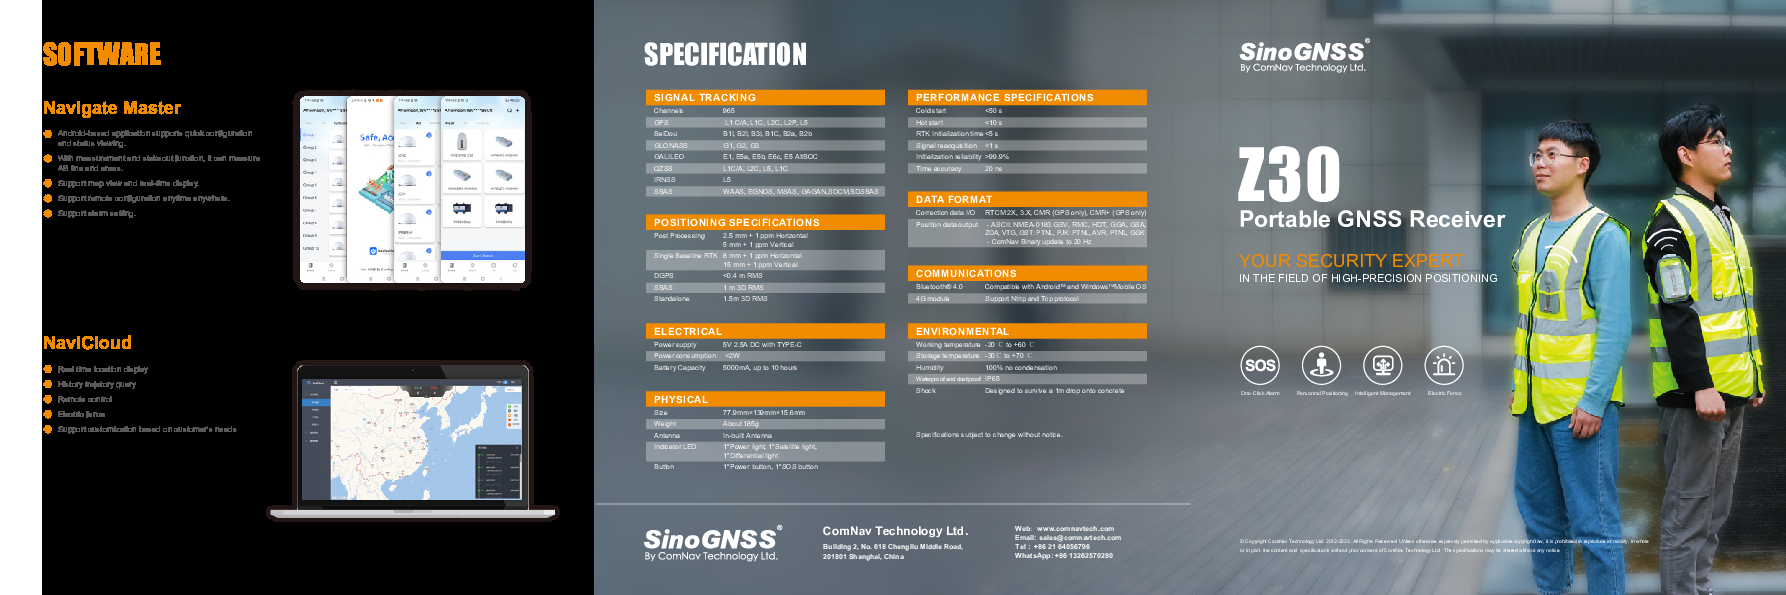 SinoGNSS Z30 Portable GNSS Receiver.pdf